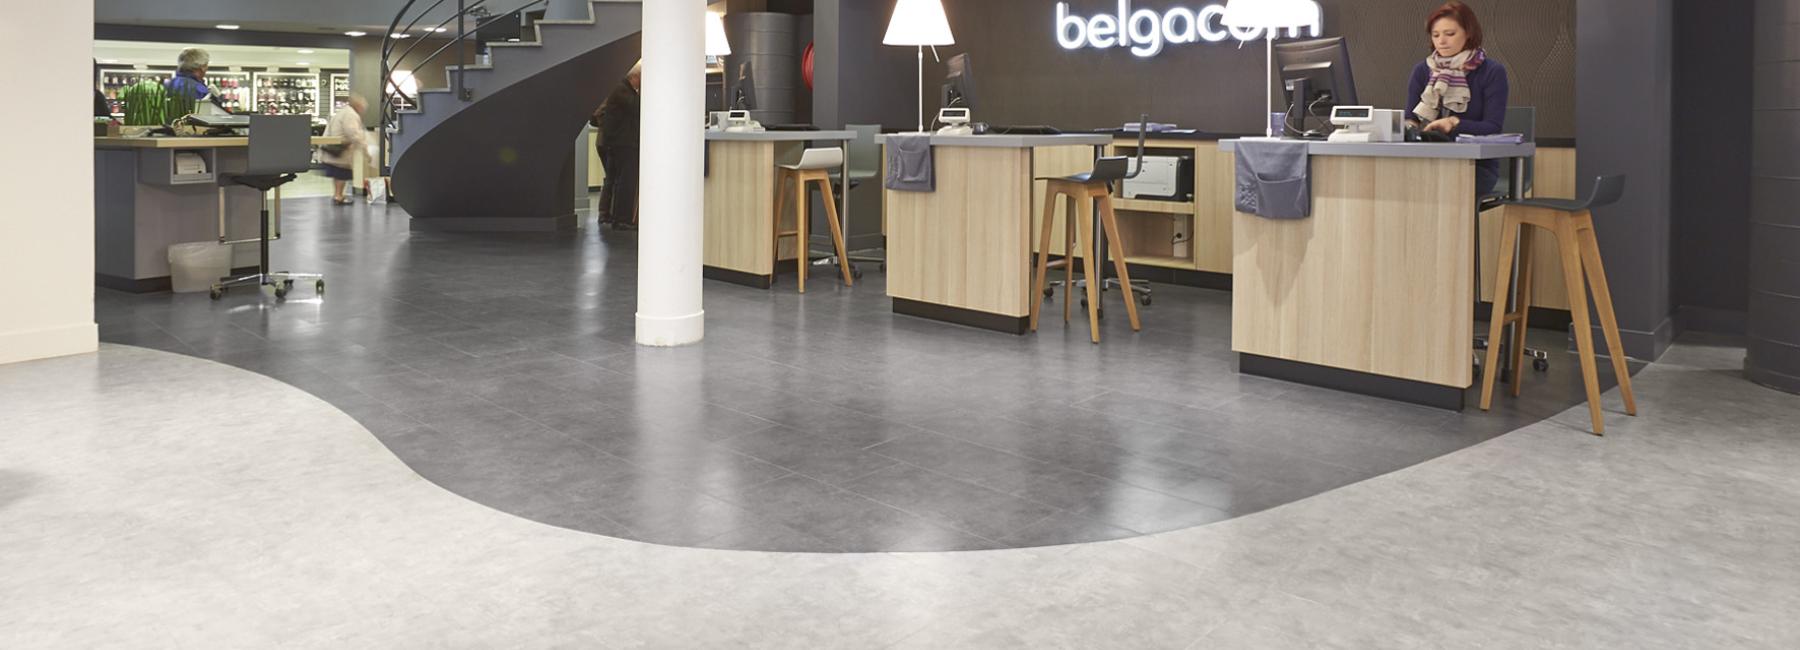 Belgacom shop